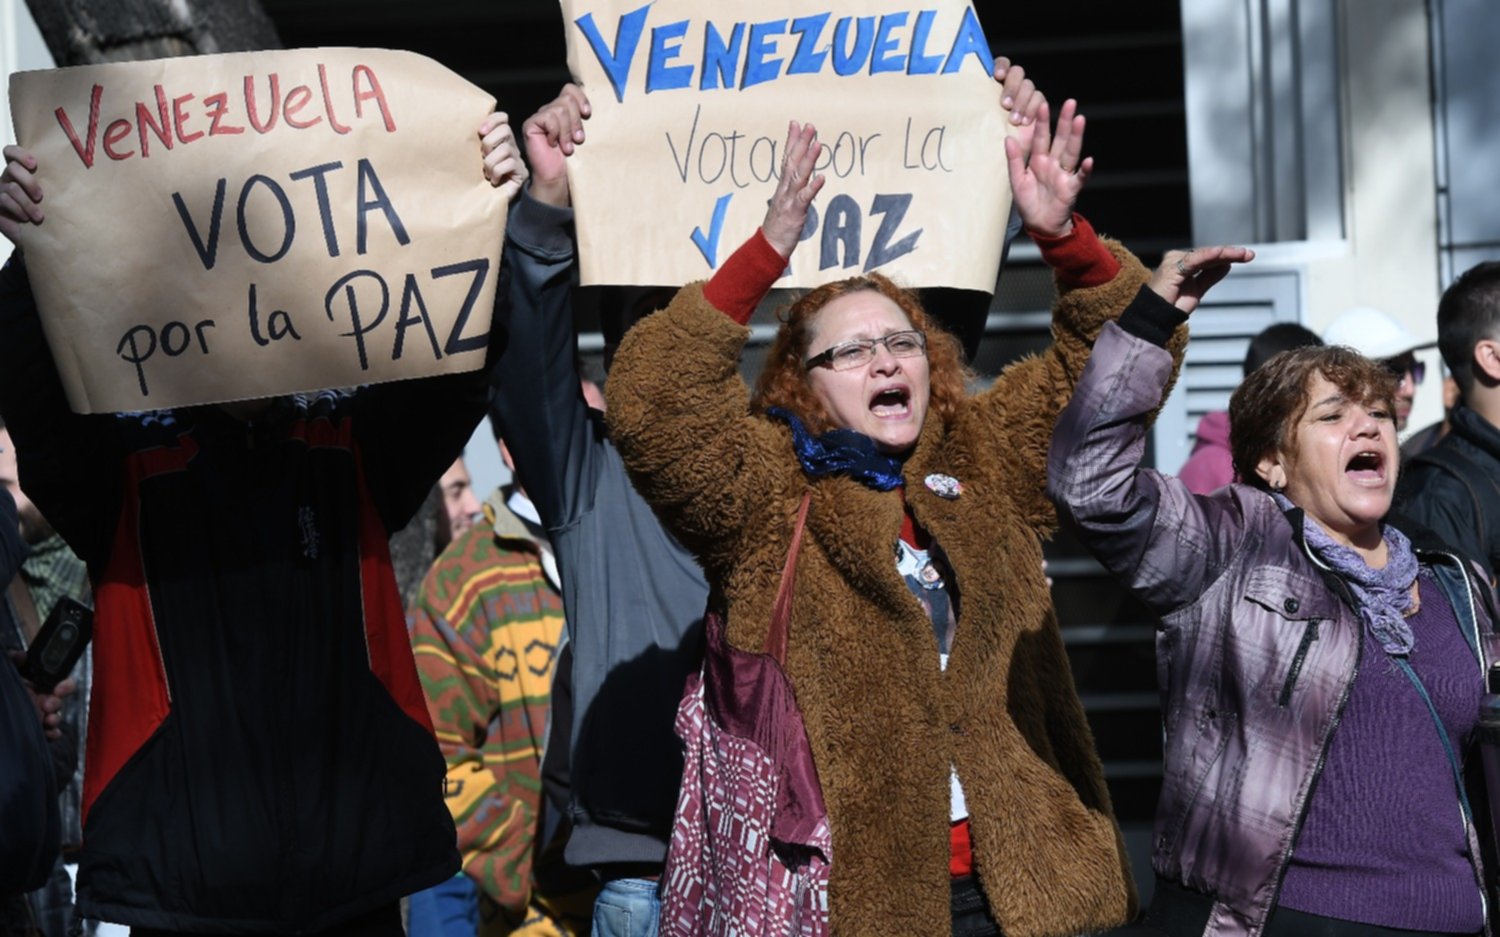 En nuestro país hay voces encontradas entre los venezolanos